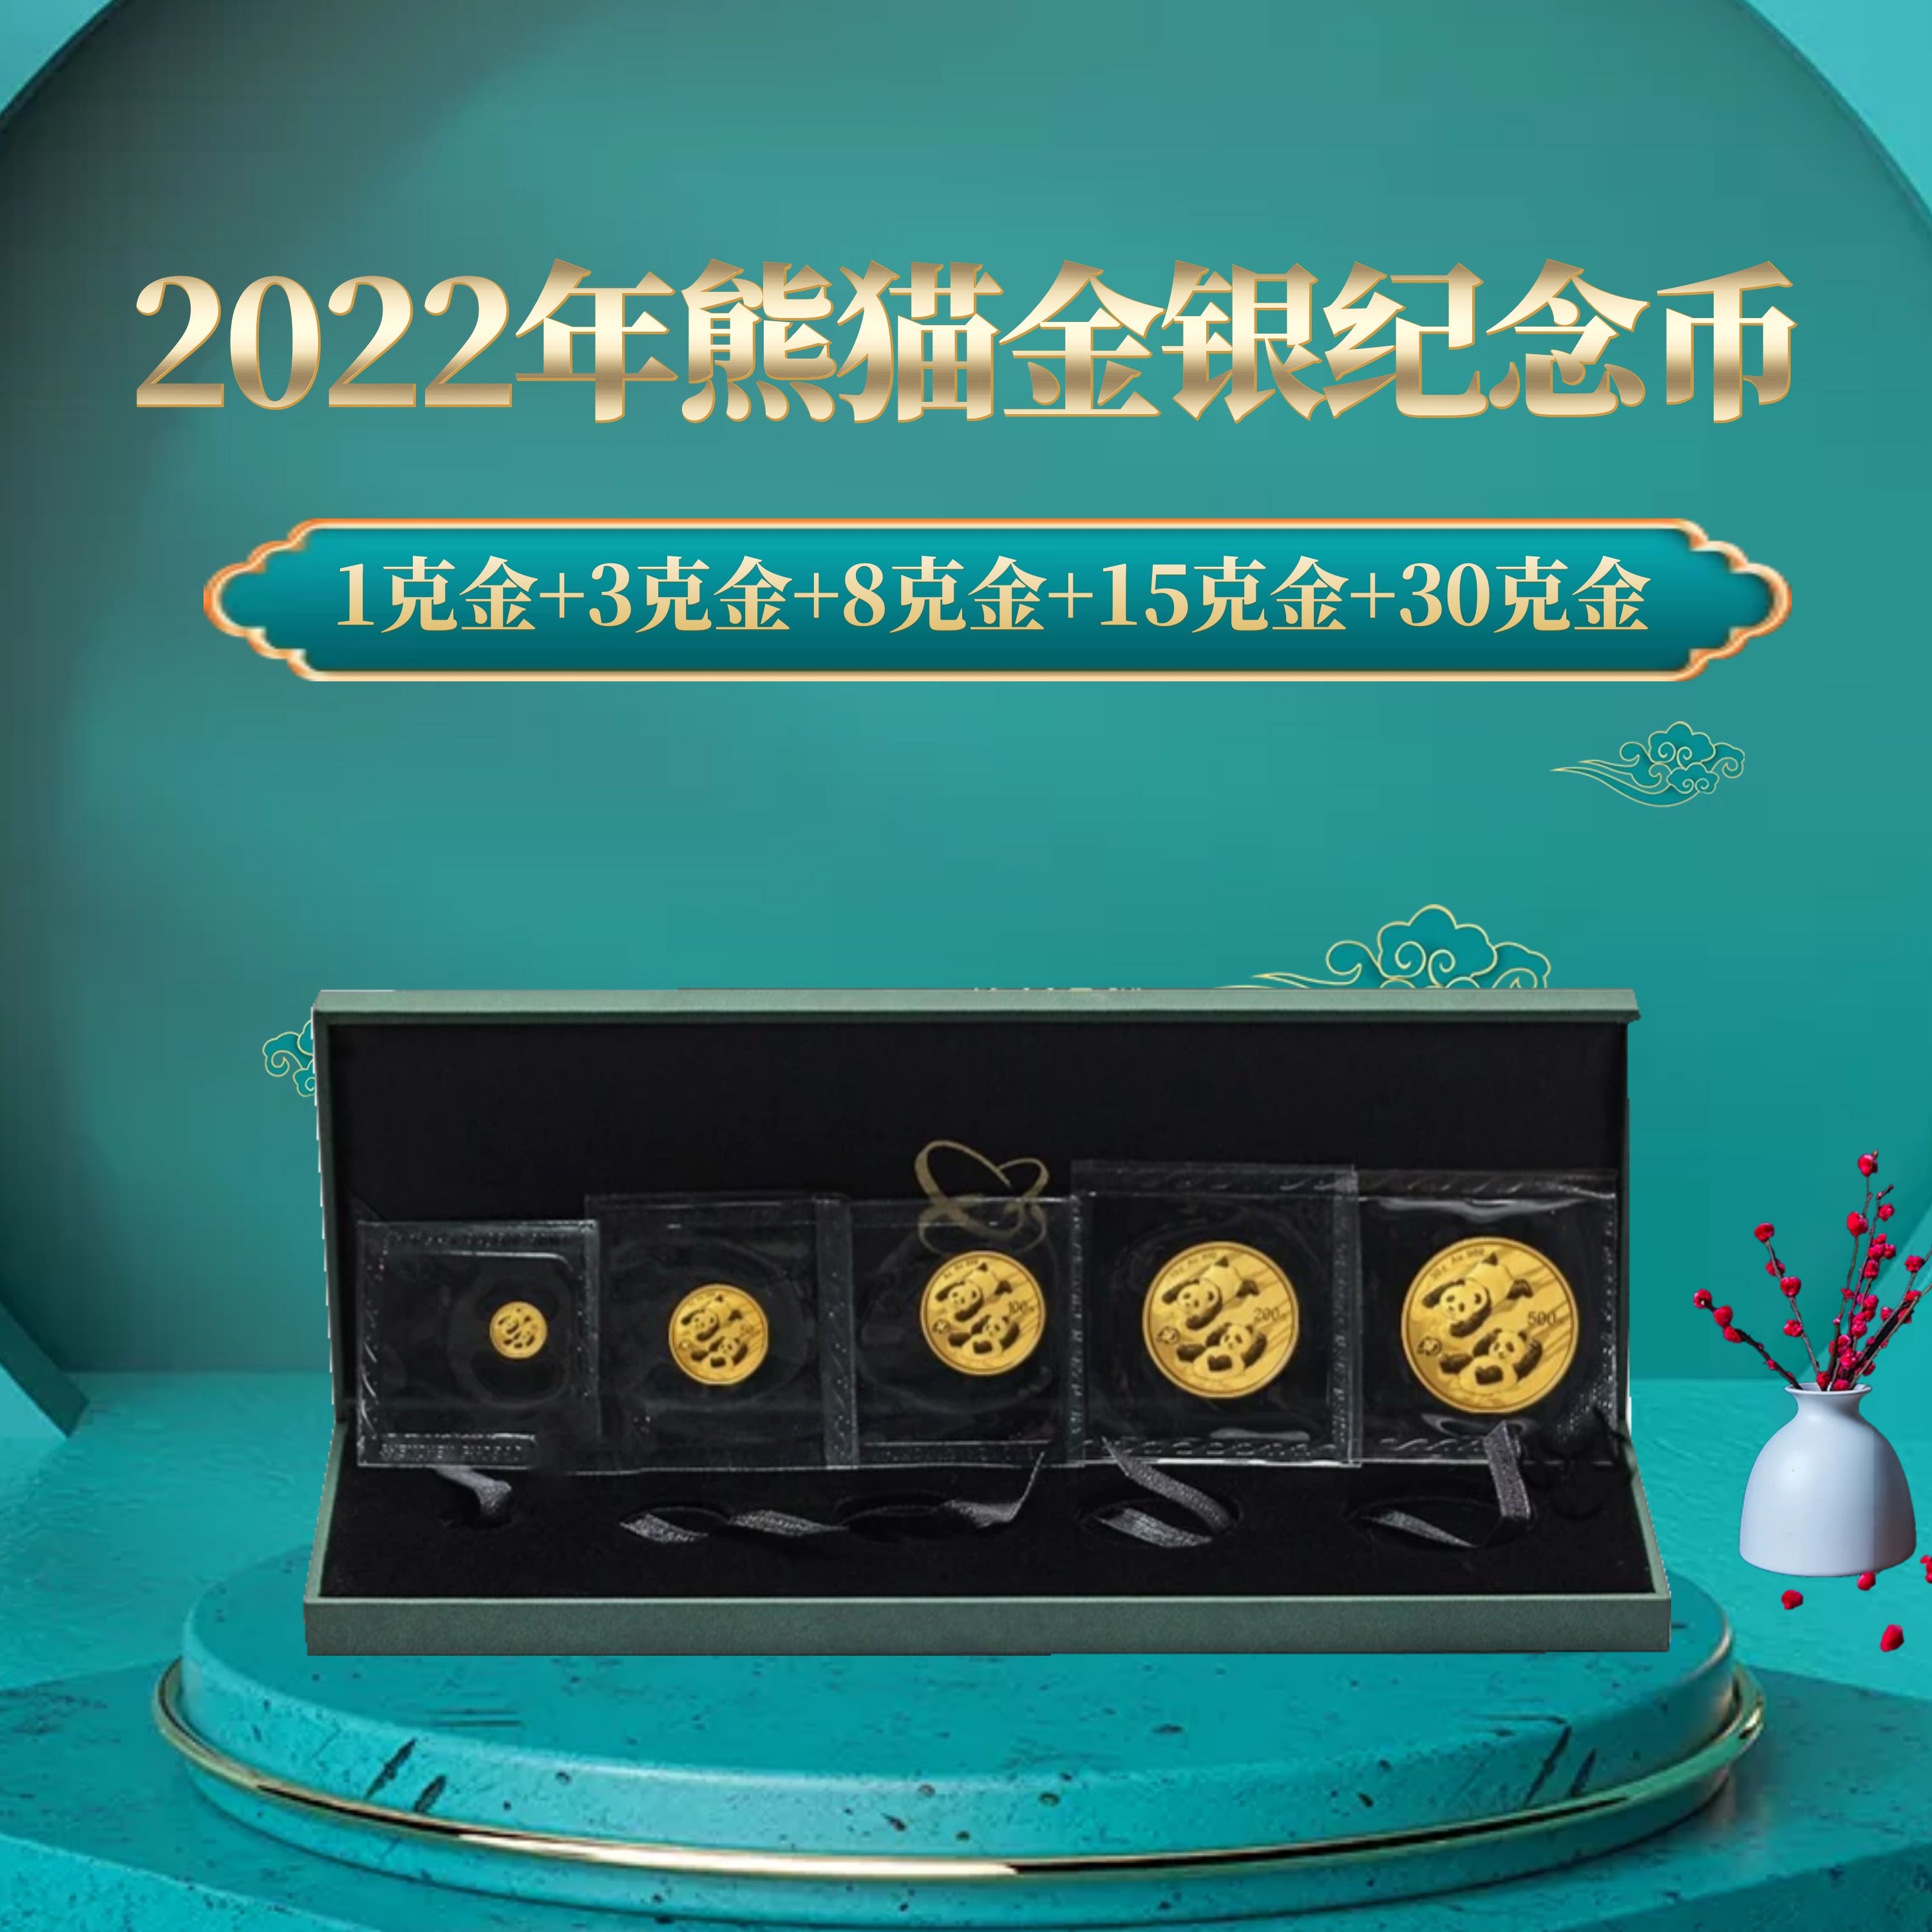 2022熊猫金币5枚套装（1克金+3克金+8克金+15克金+30克金）